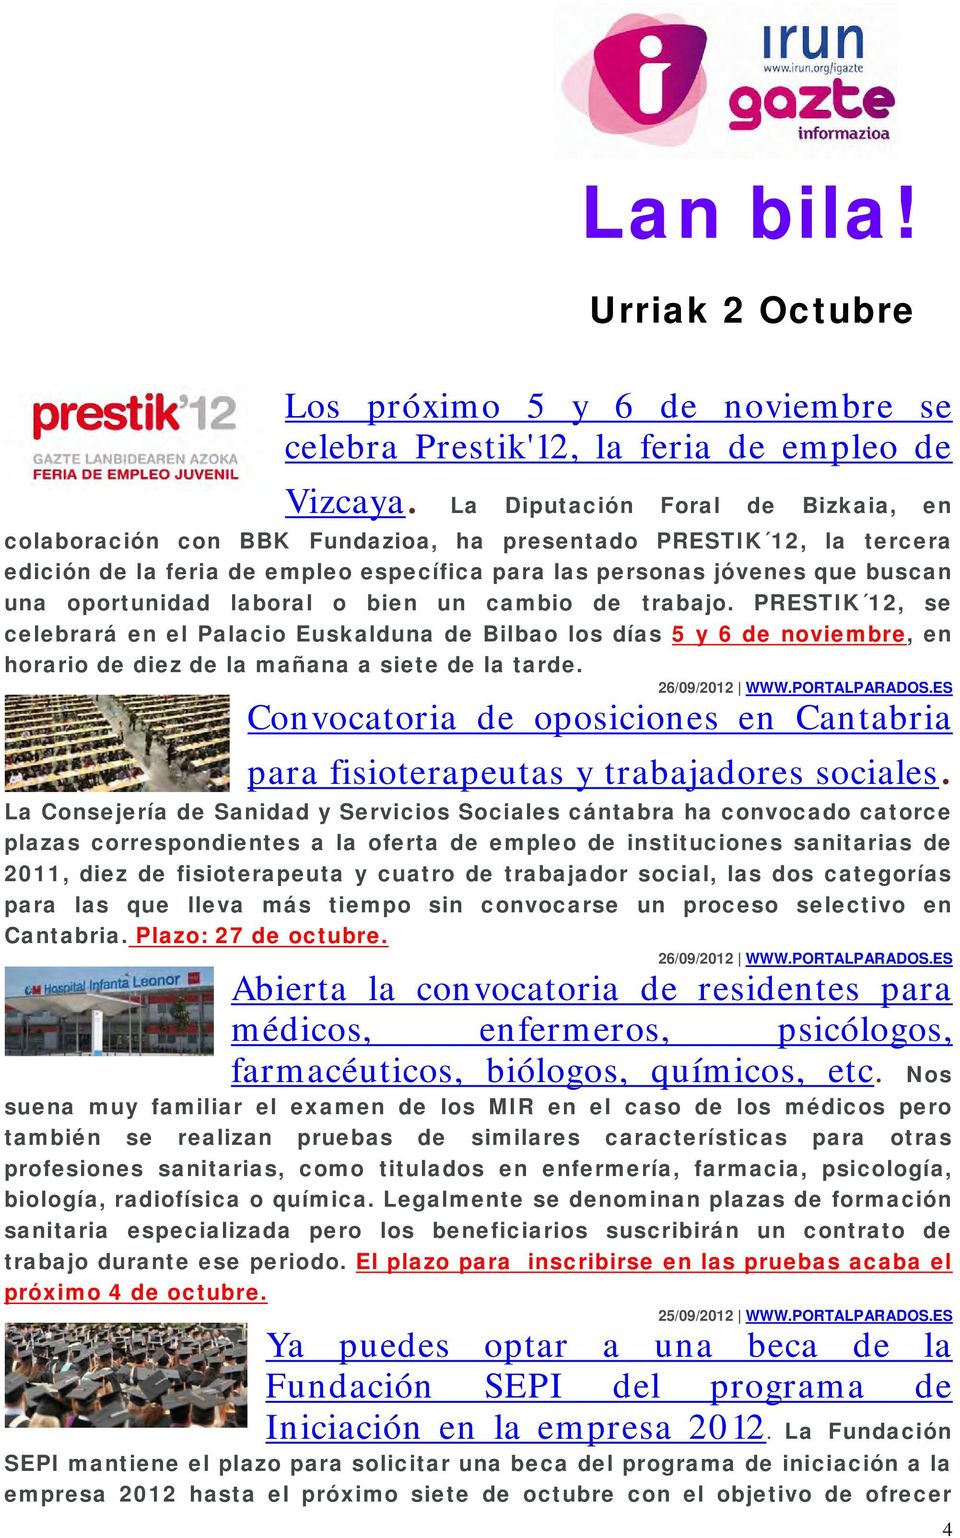 laboral o bien un cambio de trabajo. PRESTIK 12, se celebrará en el Palacio Euskalduna de Bilbao los días 5 y 6 de noviembre, en horario de diez de la mañana a siete de la tarde. 26/09/2012 WWW.